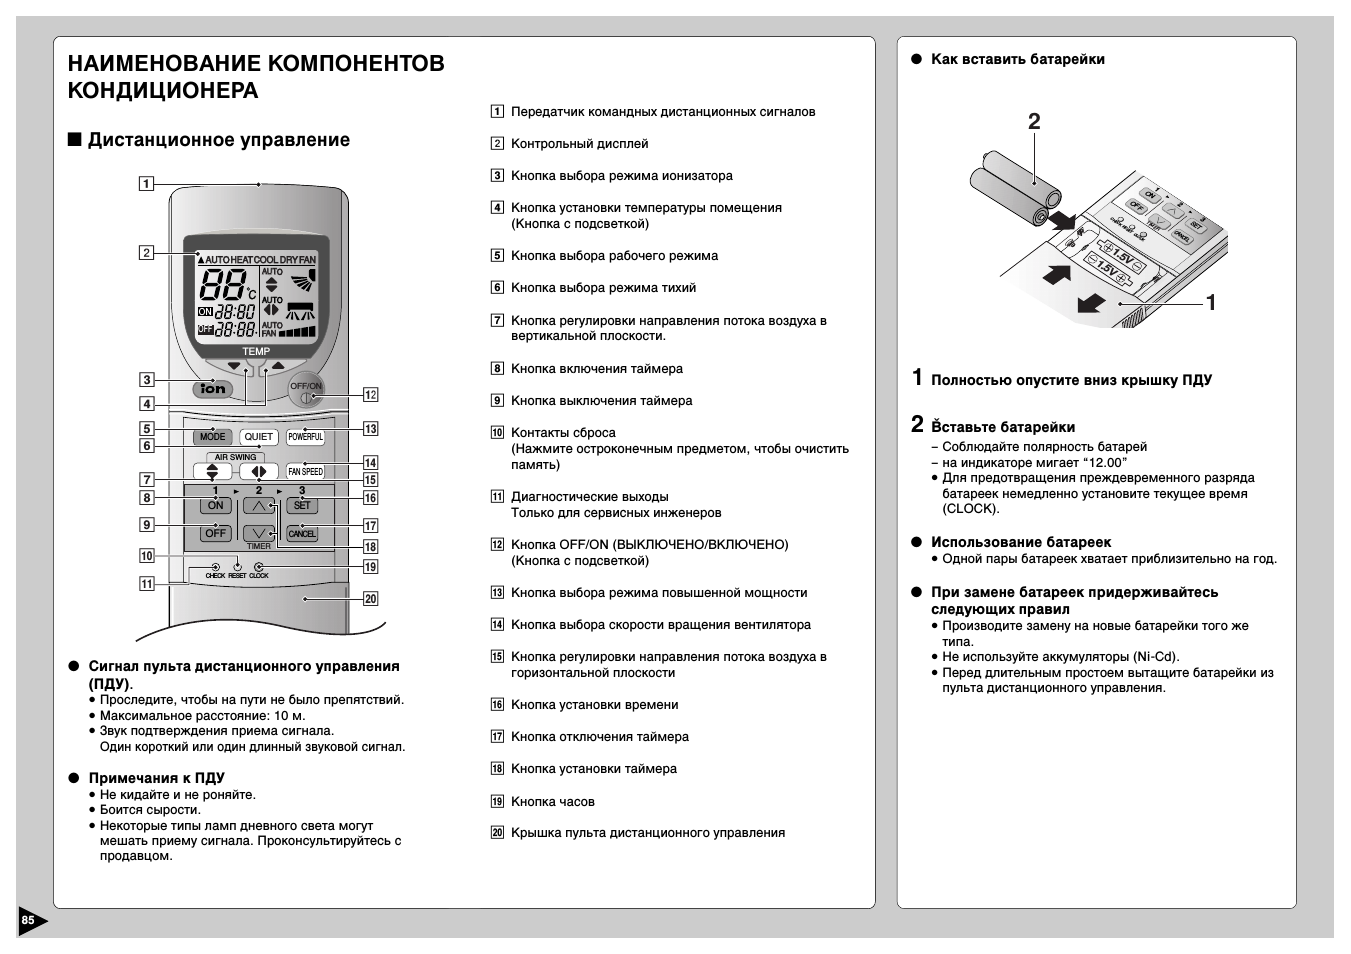 Обзор кондиционеров hec, коды ошибок и инструкции к пульту управления